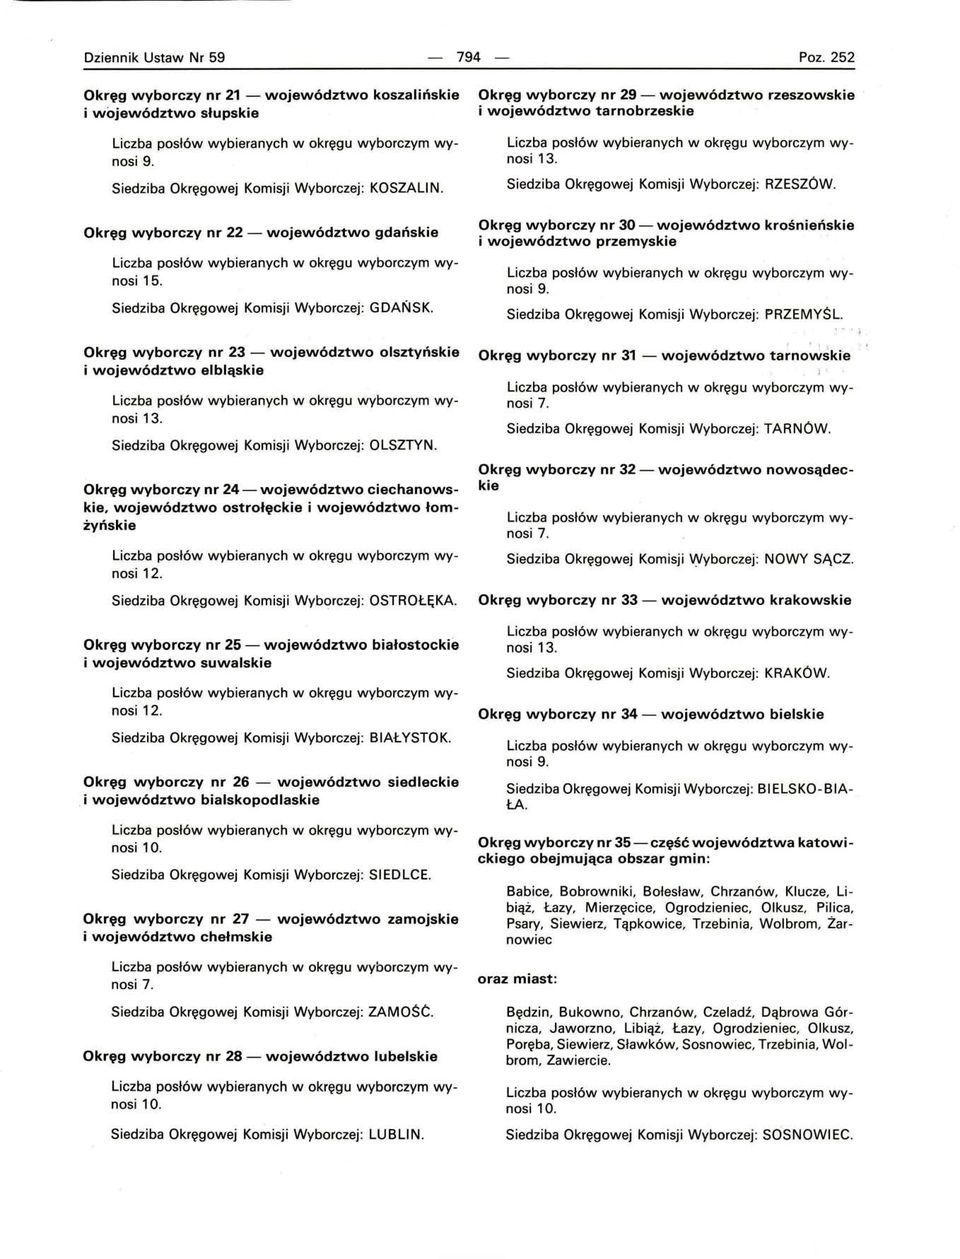 Okręg wyborczy nr 23 - i województwo elbląskie województwo olsztyńskie 13. Siedziba Okręgowej Komisji Wyborczej: OLSZTYN.